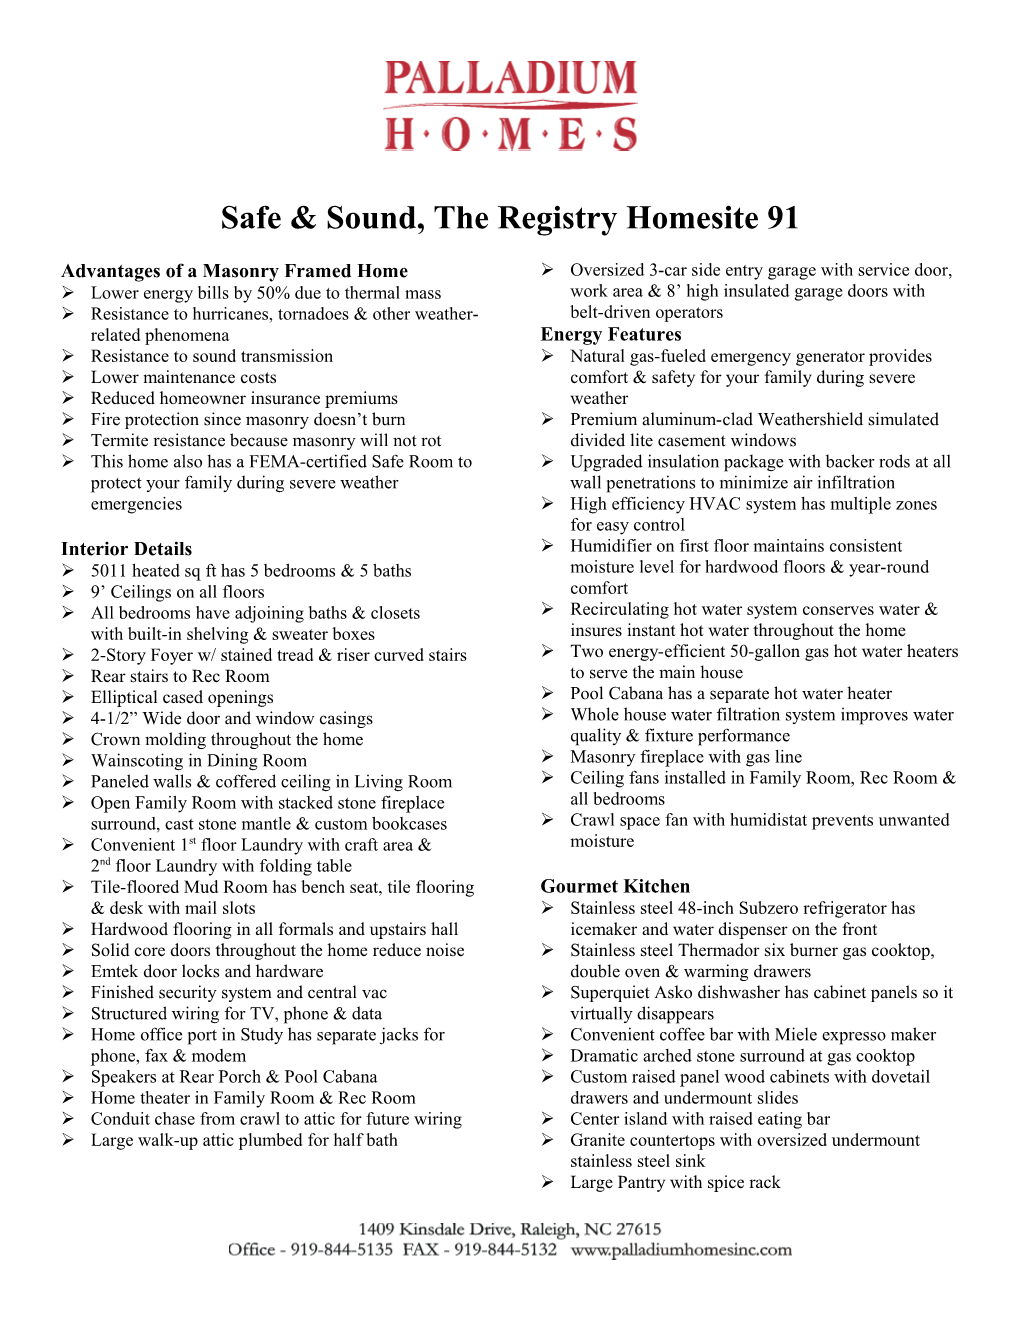 Safe & Sound, the Registry Homesite 91